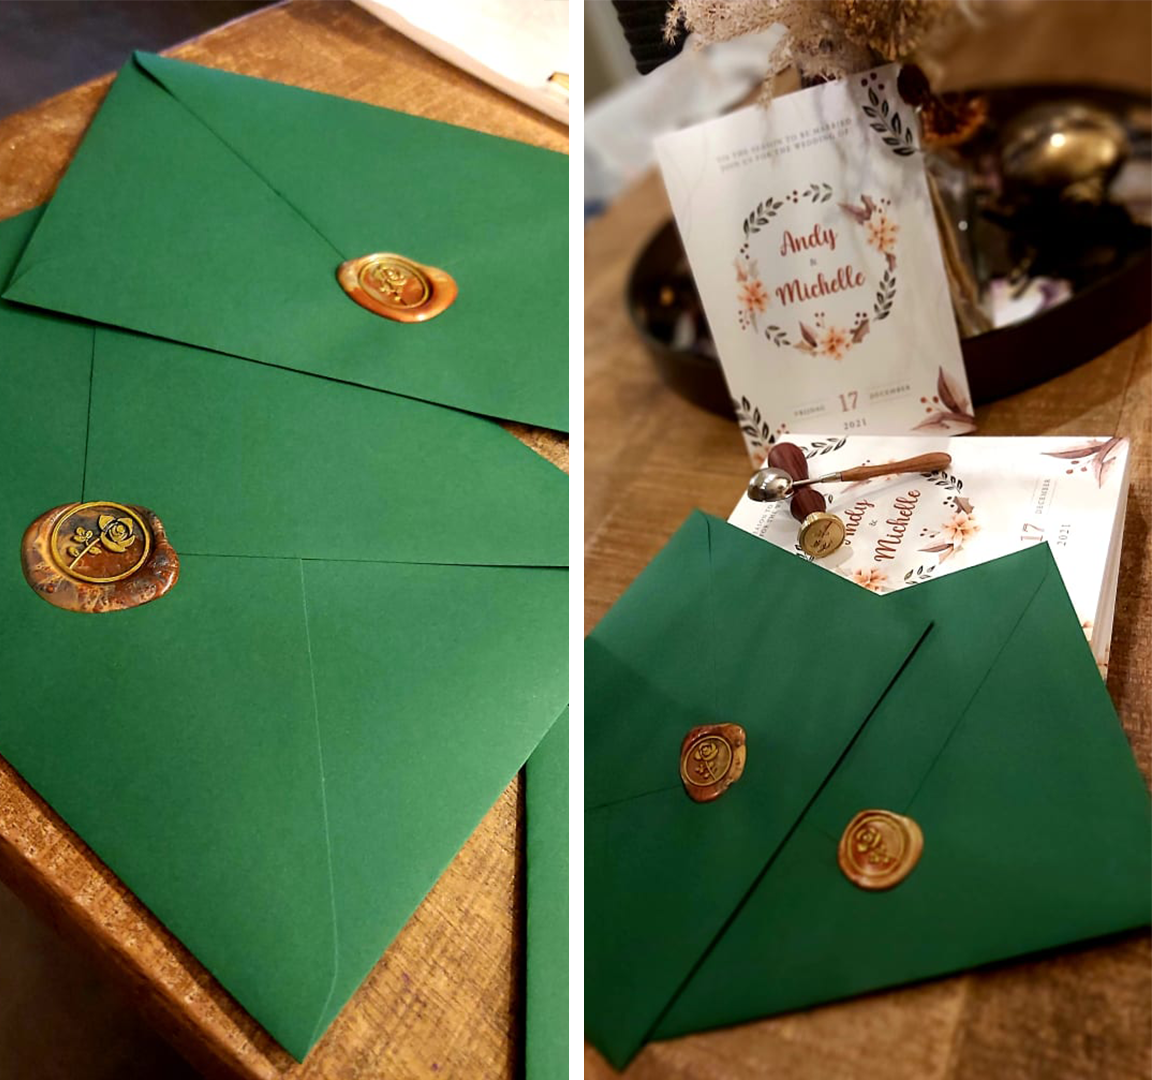 Trouwkaart Michelle & Andy kerst en trouw thema foto enveloppen met wax zegel van roos en samen met uitnodigingen